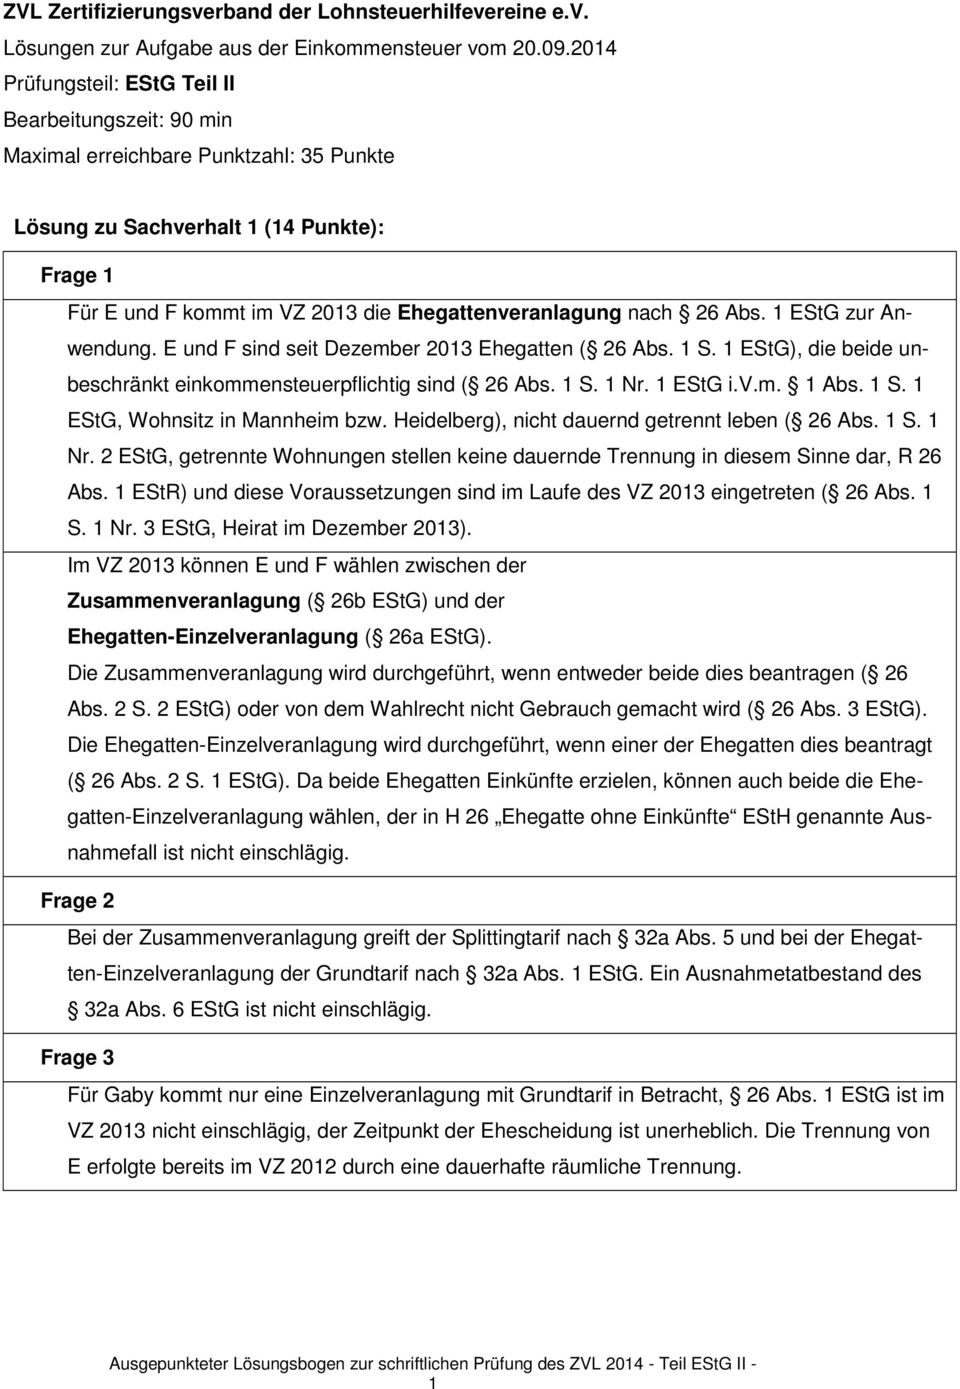 nach 26 Abs. 1 EStG zur Anwendung. E und F sind seit Dezember 2013 Ehegatten ( 26 Abs. 1 S. 1 EStG), die beide unbeschränkt einkommensteuerpflichtig sind ( 26 Abs. 1 S. 1 Nr. 1 EStG i.v.m. 1 Abs. 1 S. 1 EStG, Wohnsitz in Mannheim bzw.